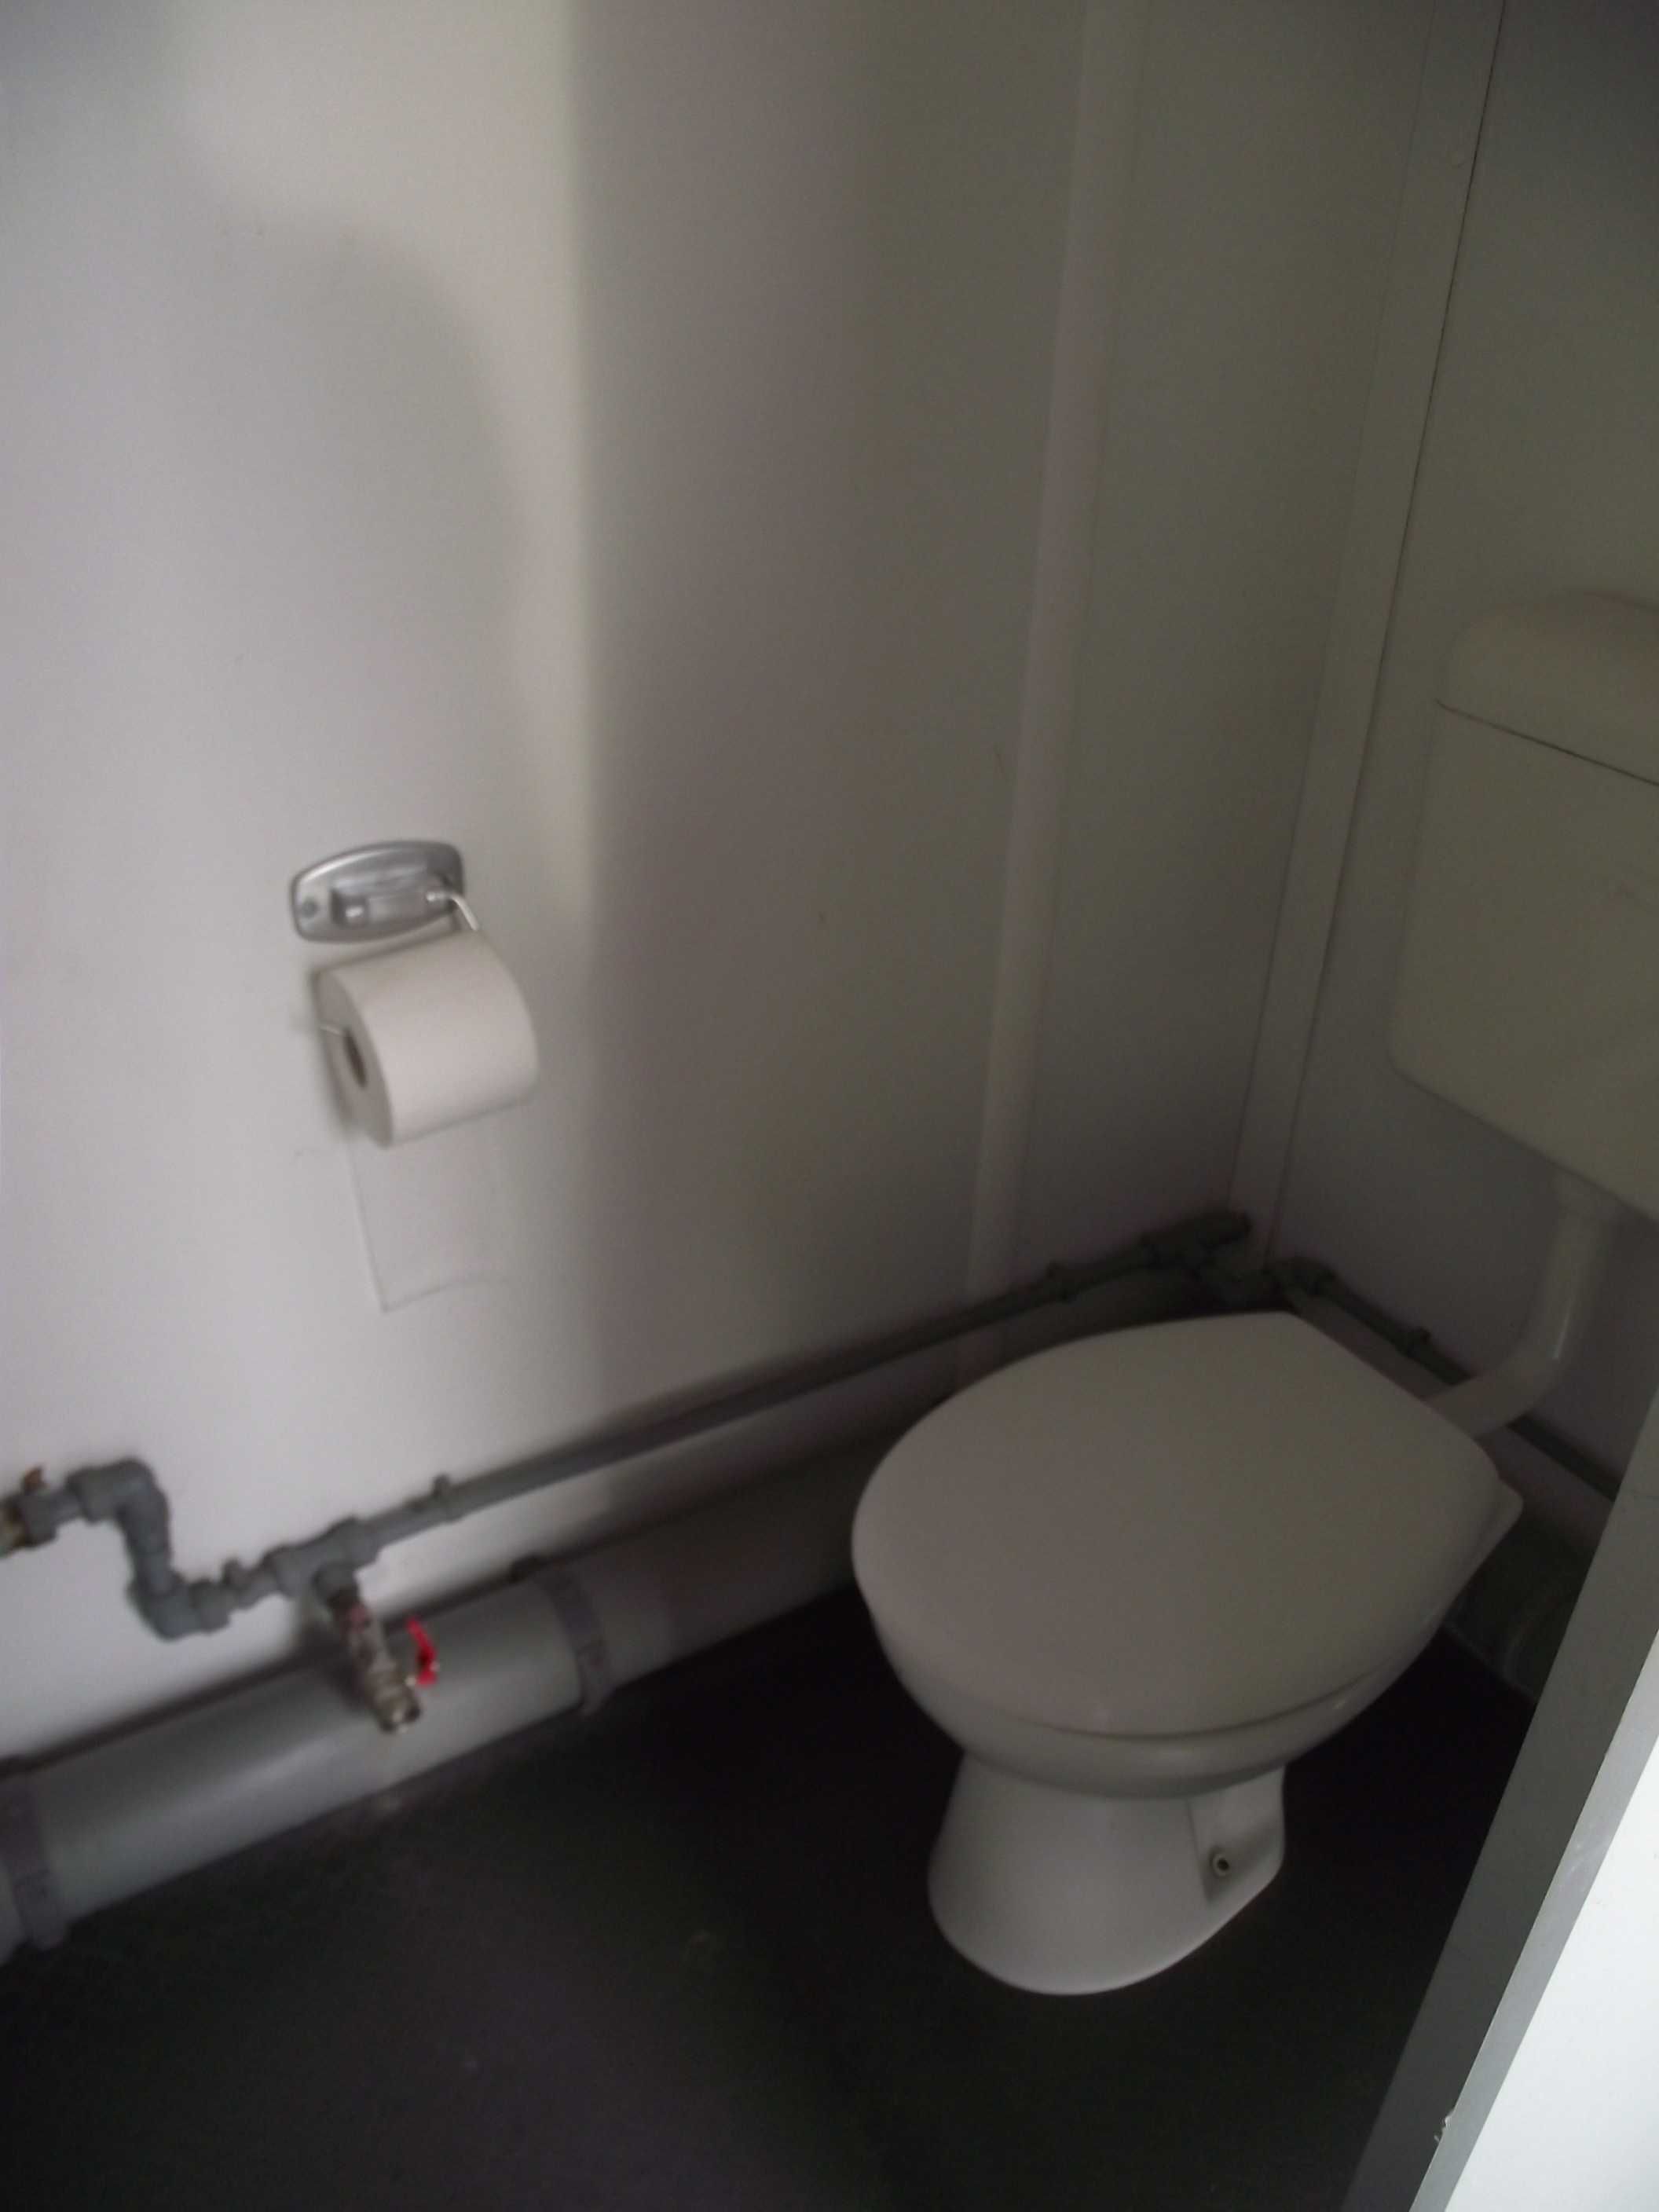 Kontener sanitarny damsko-męski WC socjalny możliwość zakupu z szambem